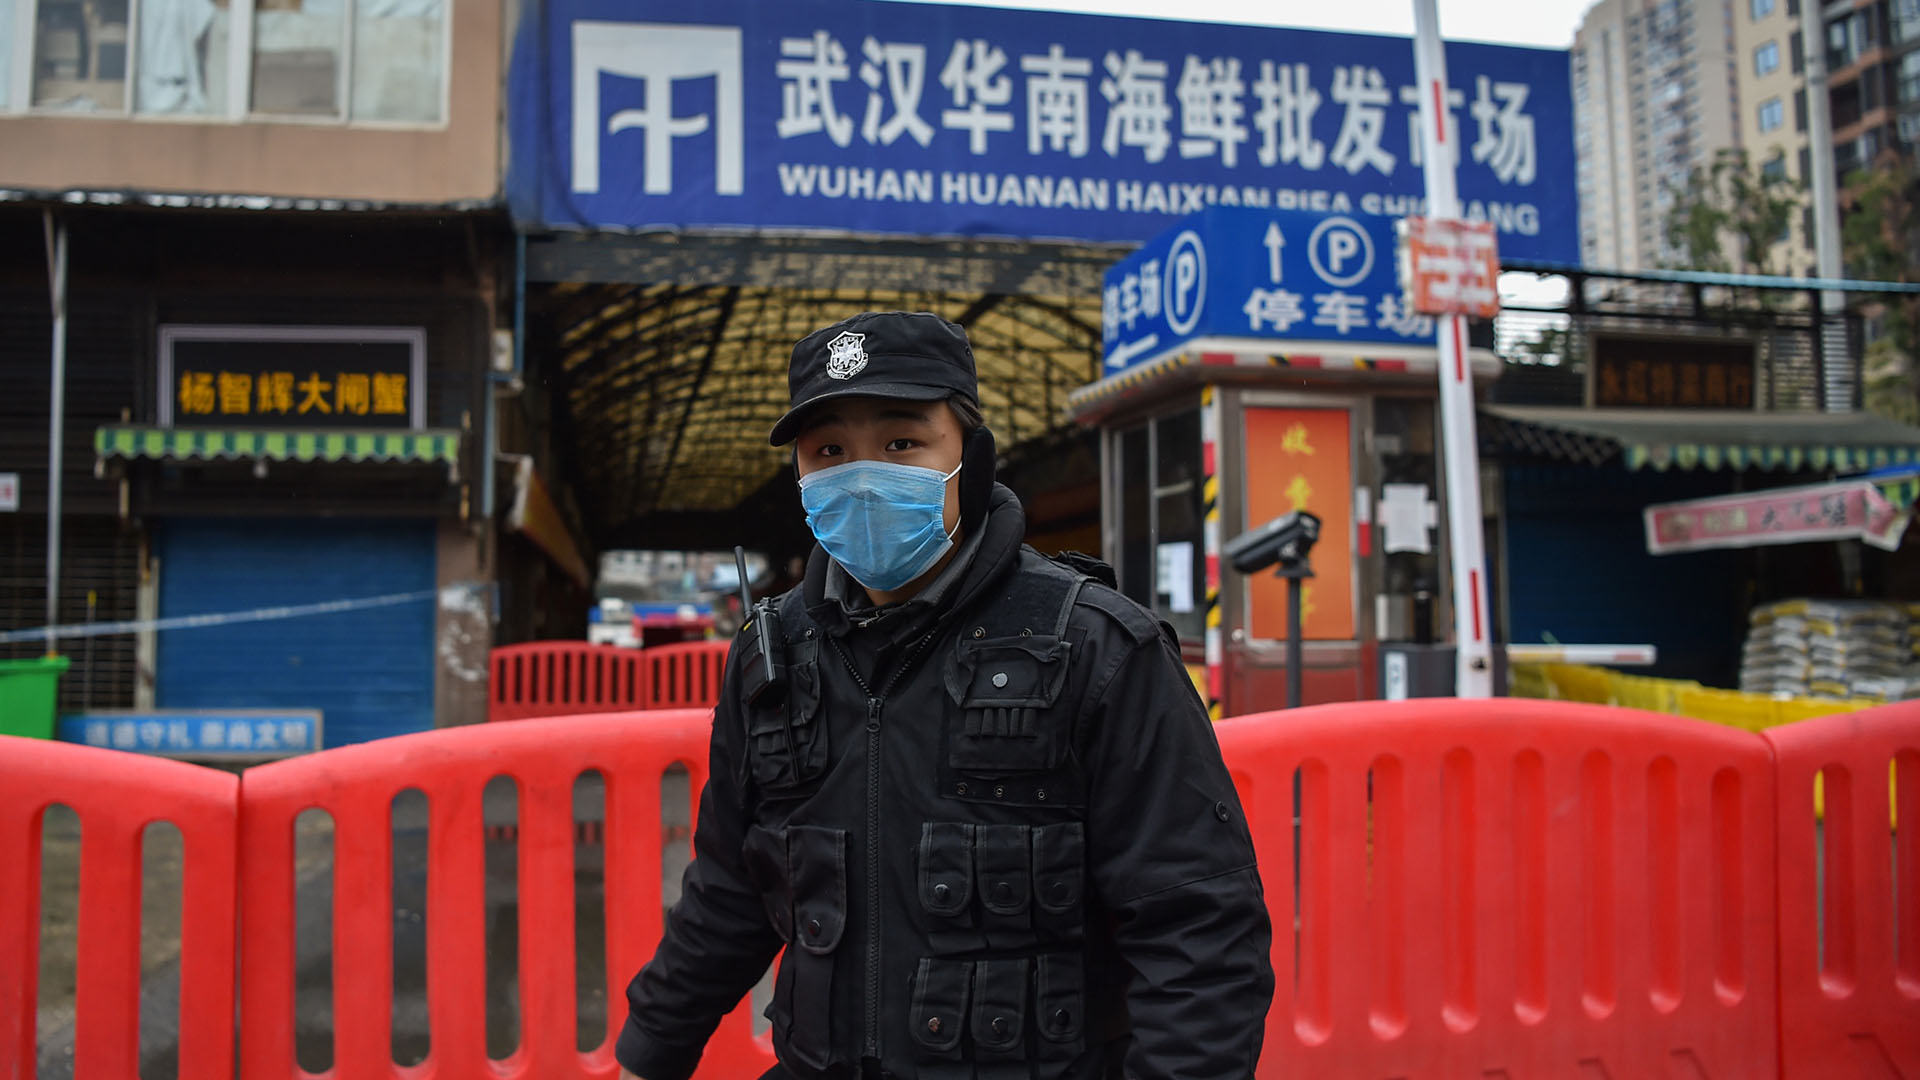 El mercado húmedo de Wuhan donde se venden animales vivos o se sacrifican allí mismo. Se cree que allí podría haber surgido el virus